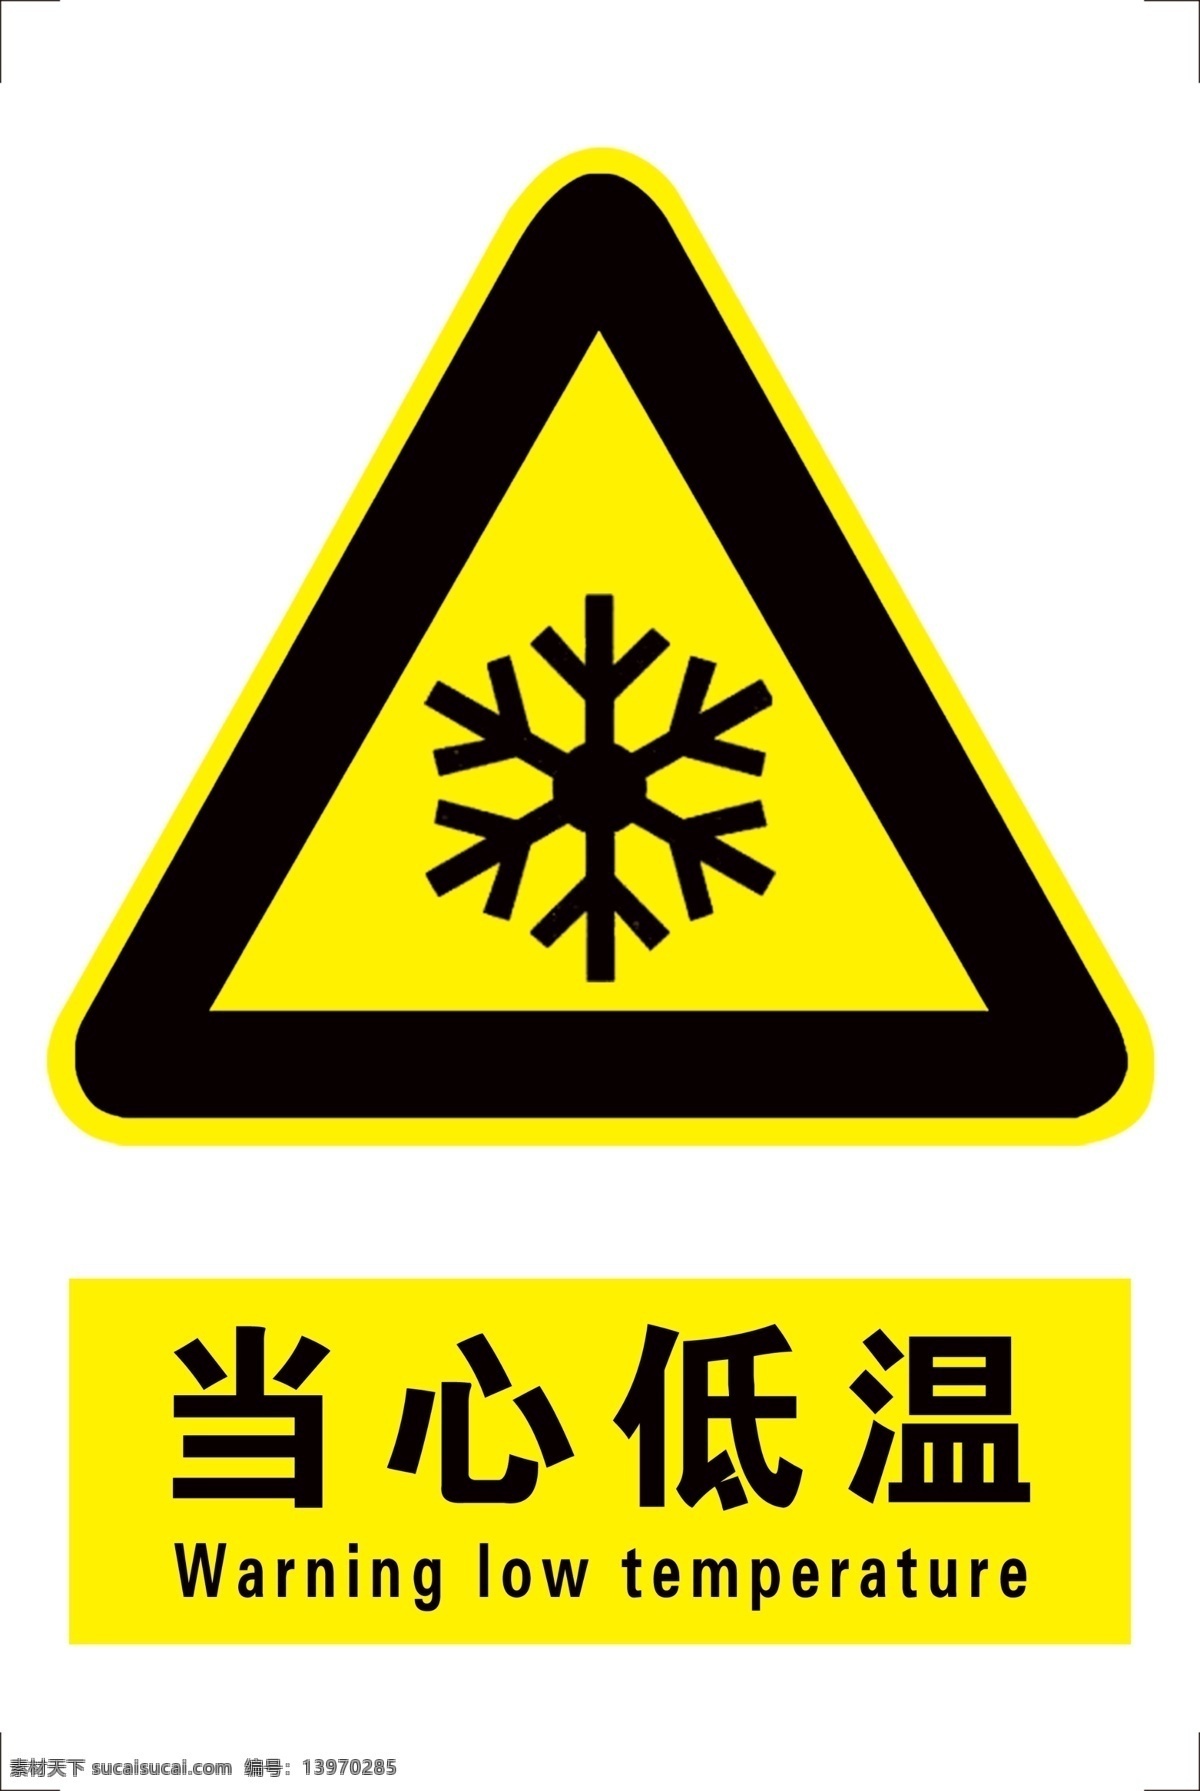 当心低温 当心 低温 标牌 广告标牌 标志图标 公共标识标志